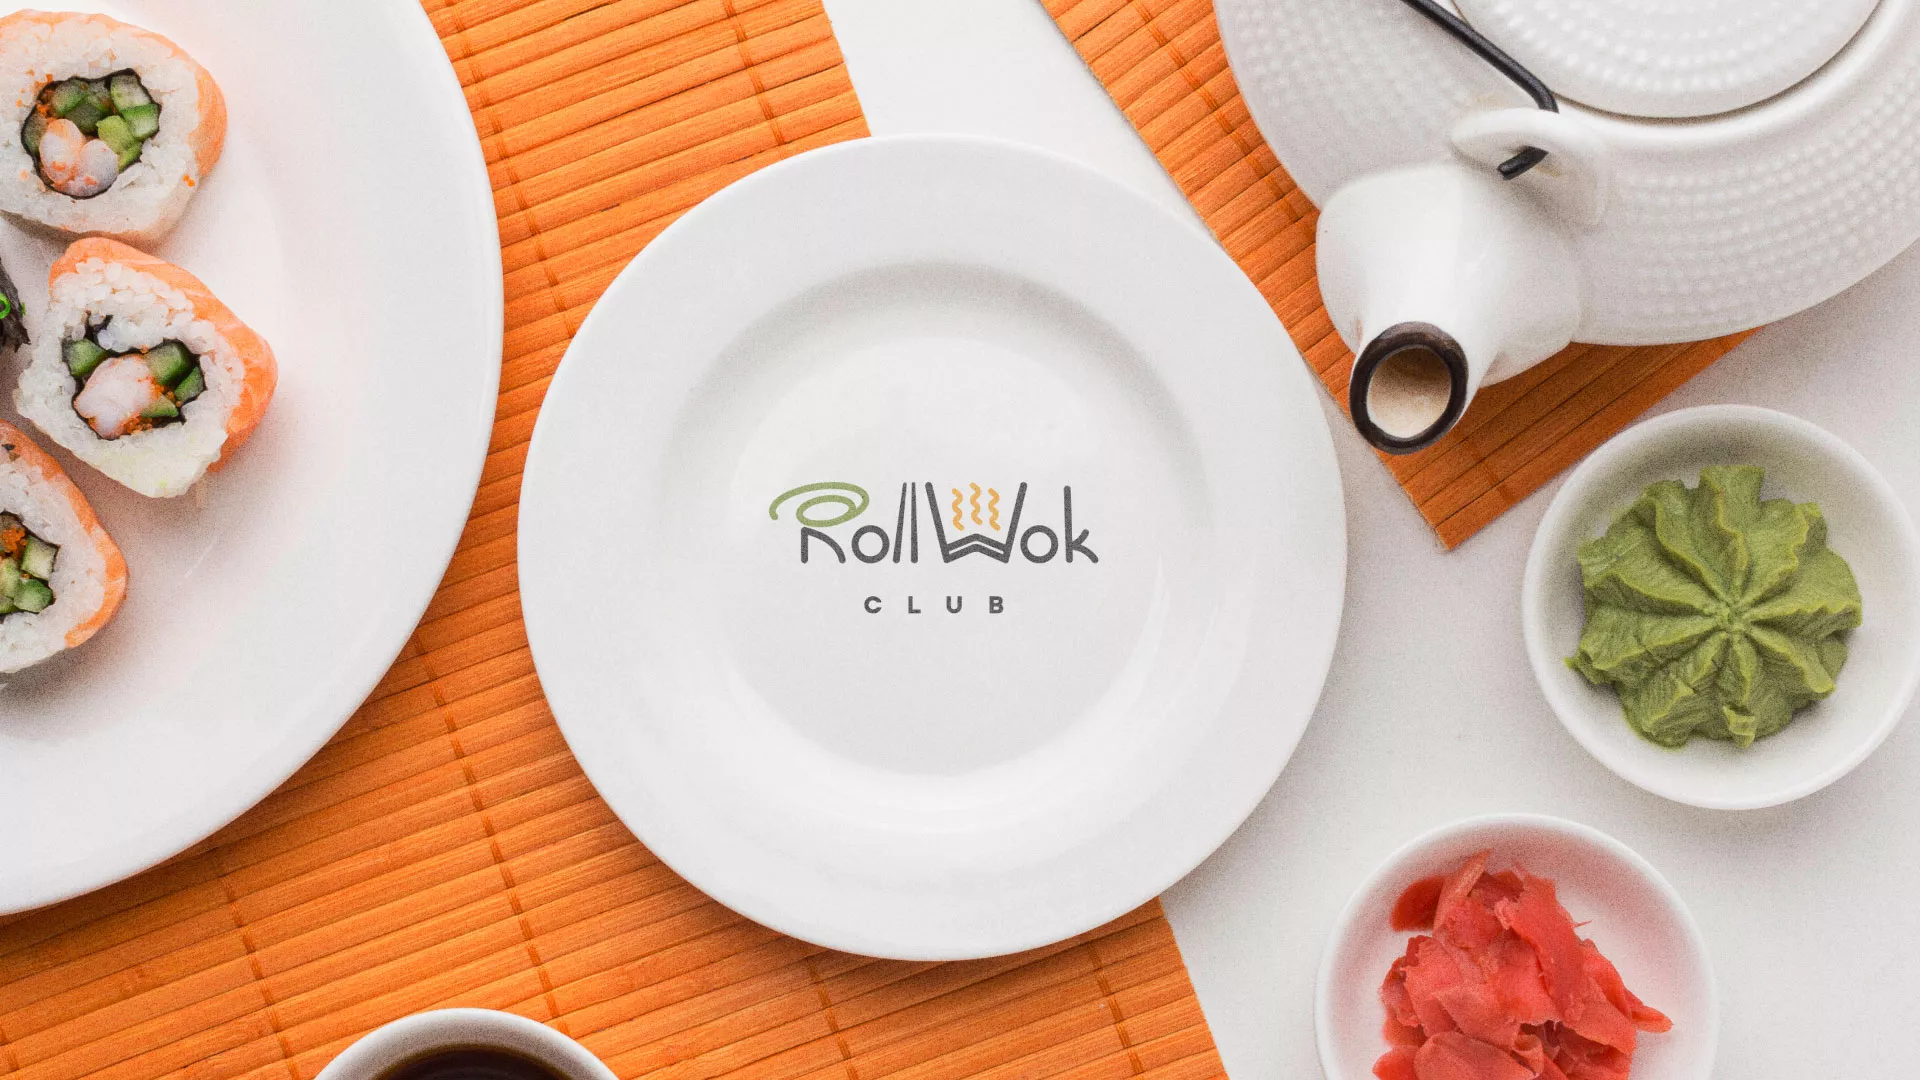 Разработка логотипа и фирменного стиля суши-бара «Roll Wok Club» в Старой Руссе